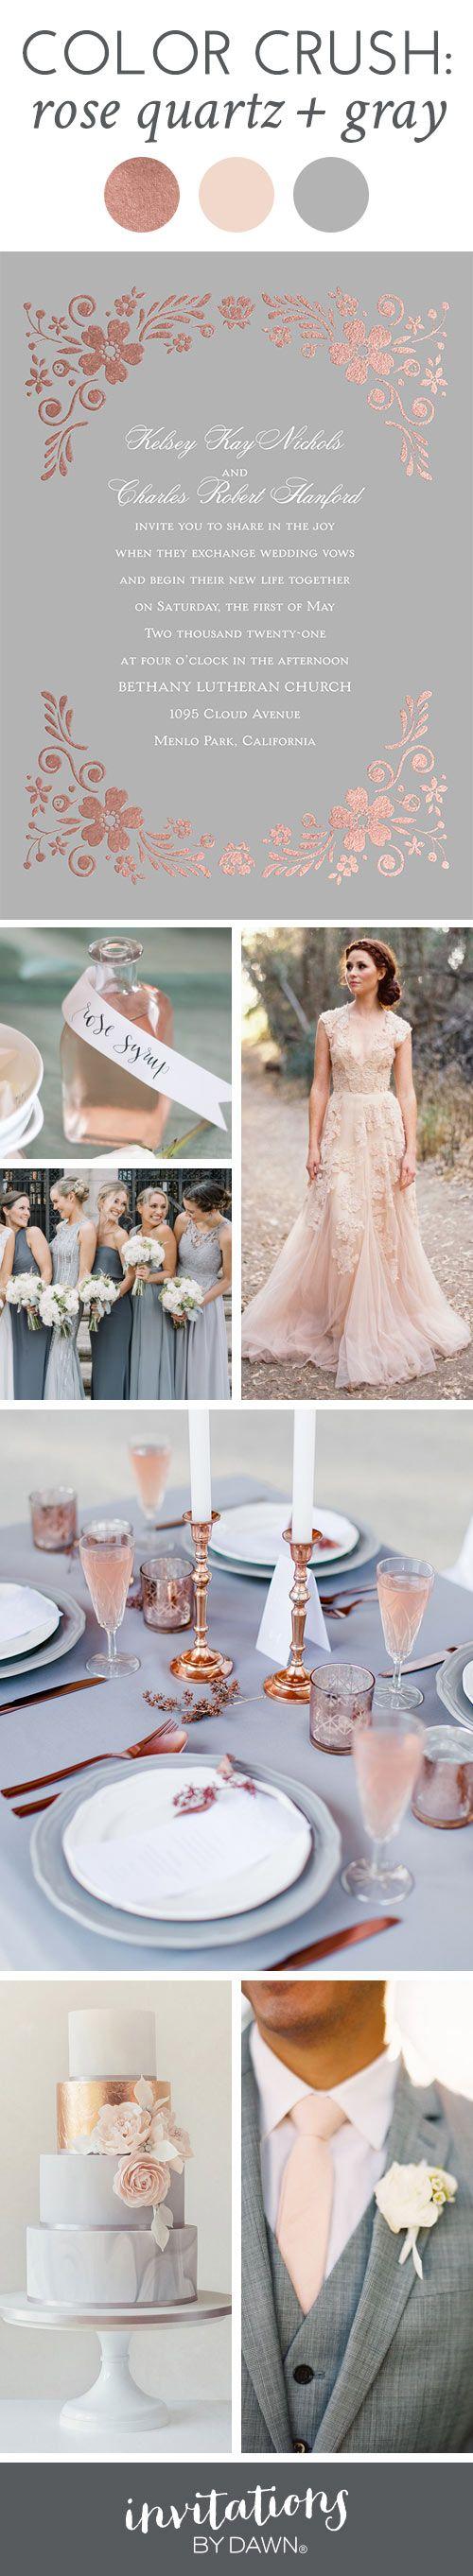 Wedding - Color Crush: Rose Quartz And Gray